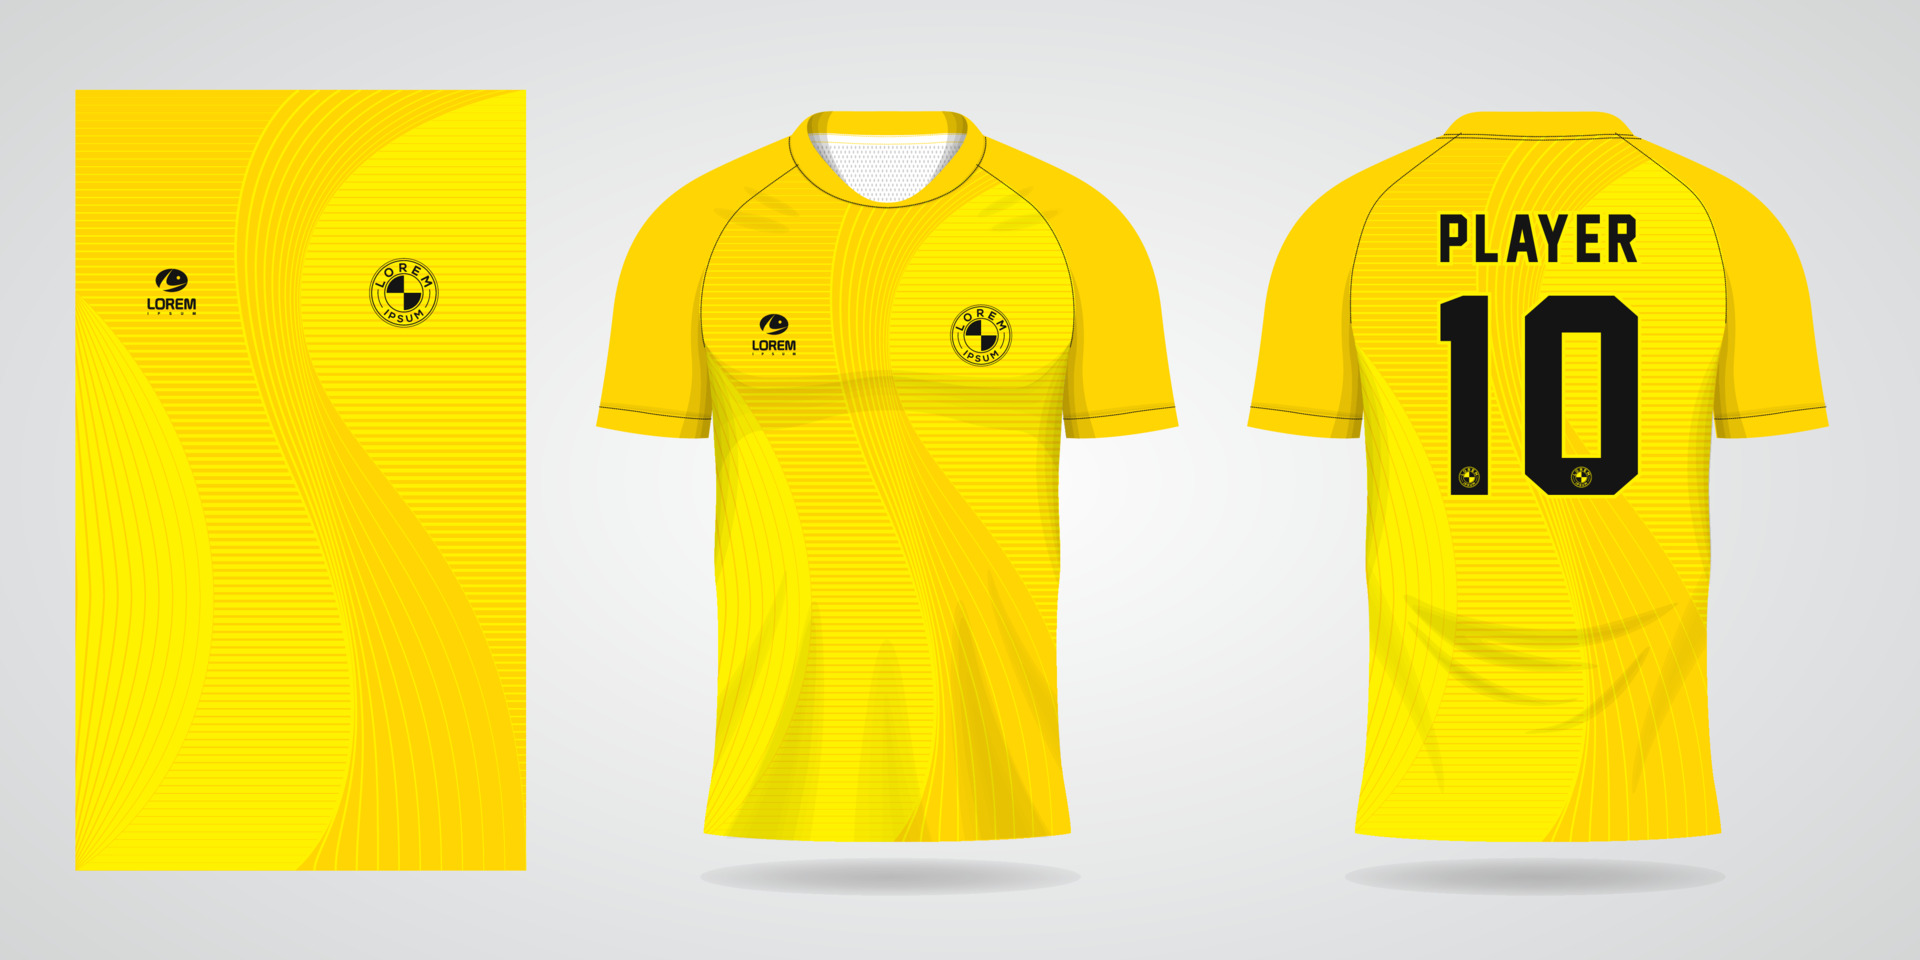 Imágenes de Camiseta Futbol Amarilla - Descarga gratuita en Freepik